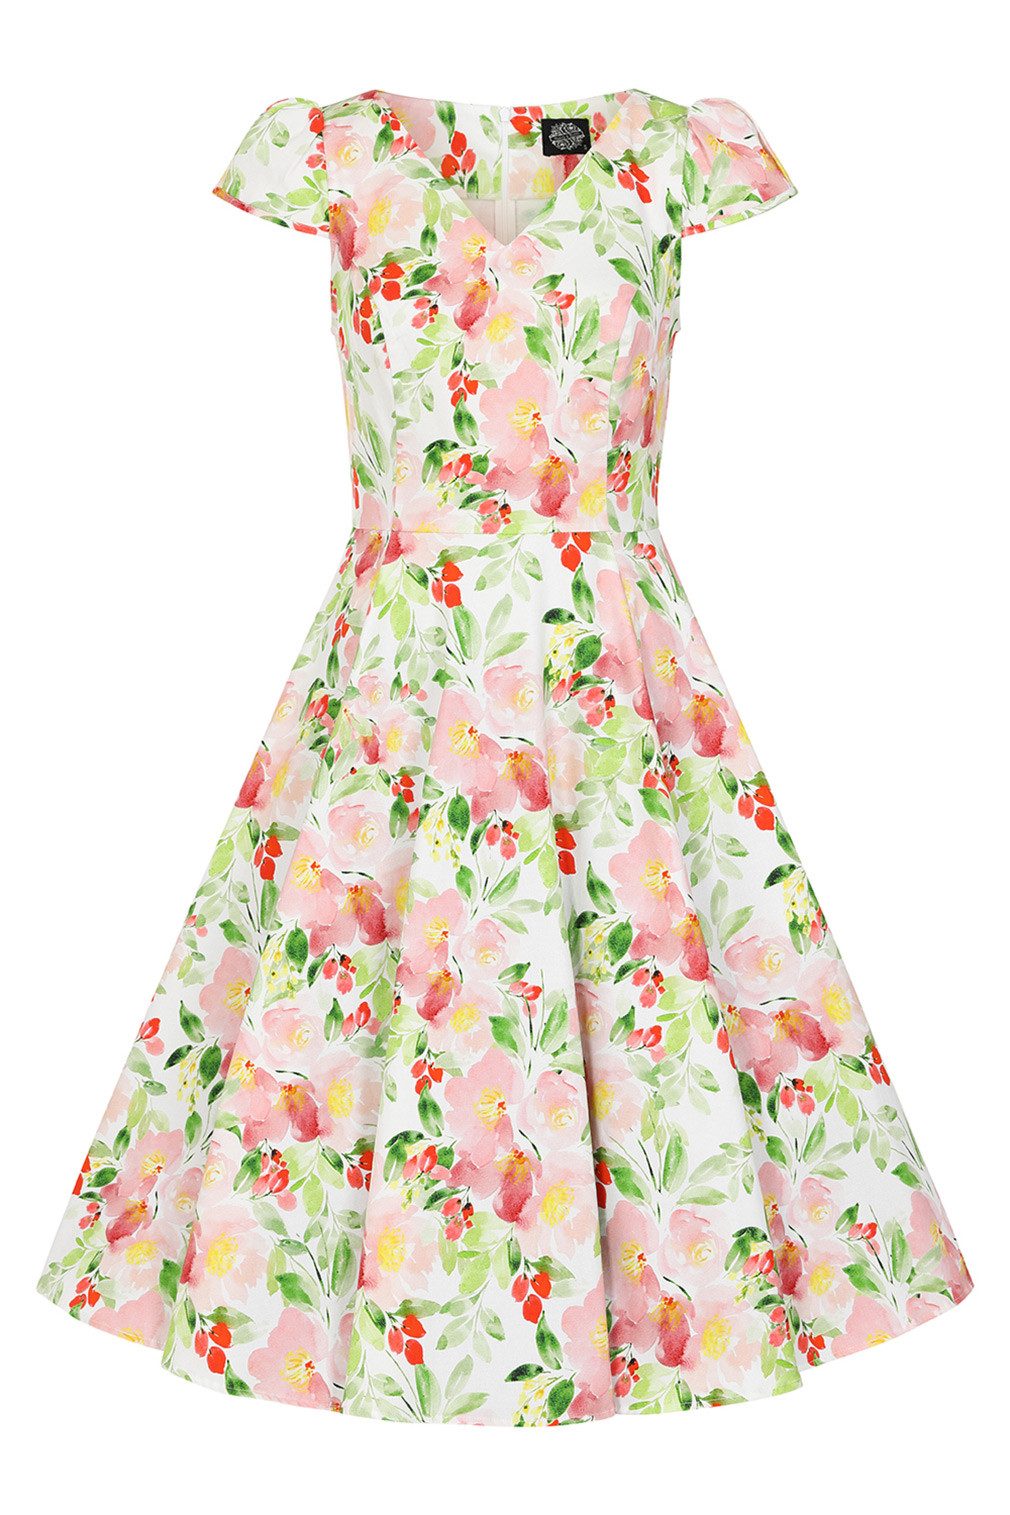 Hearts & Roses London A-Linien-Kleid Larisa Floral Swing Dress Rockabella Vintage Retro